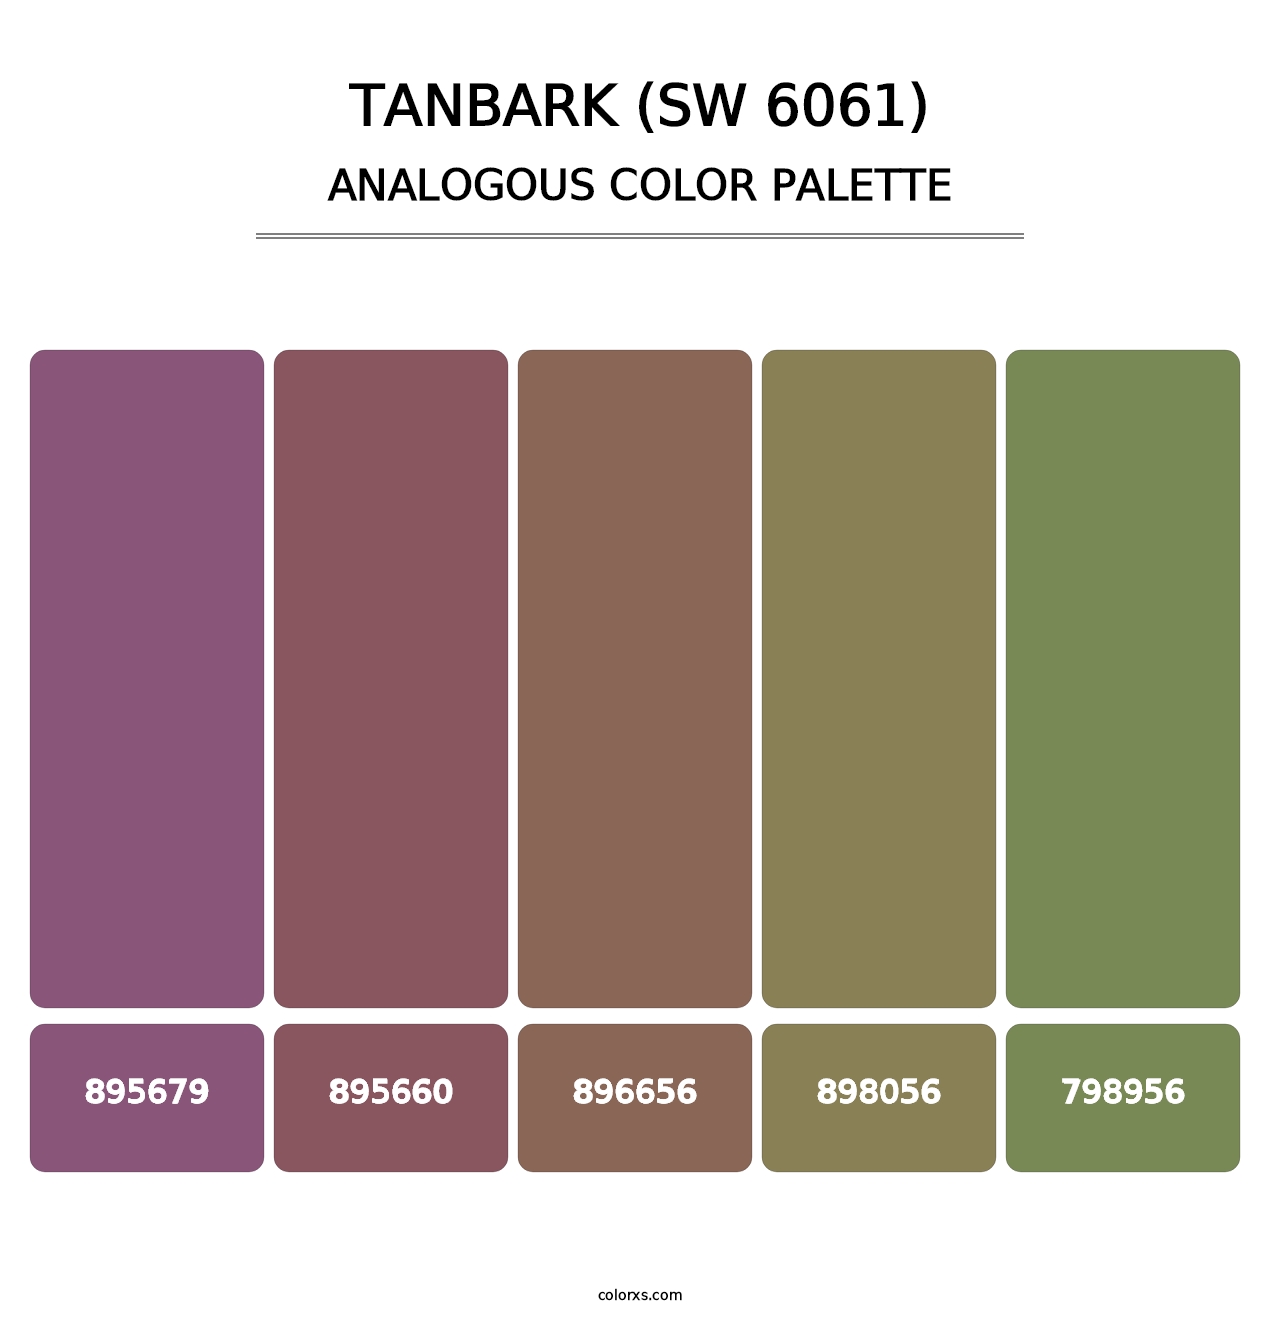 Tanbark (SW 6061) - Analogous Color Palette